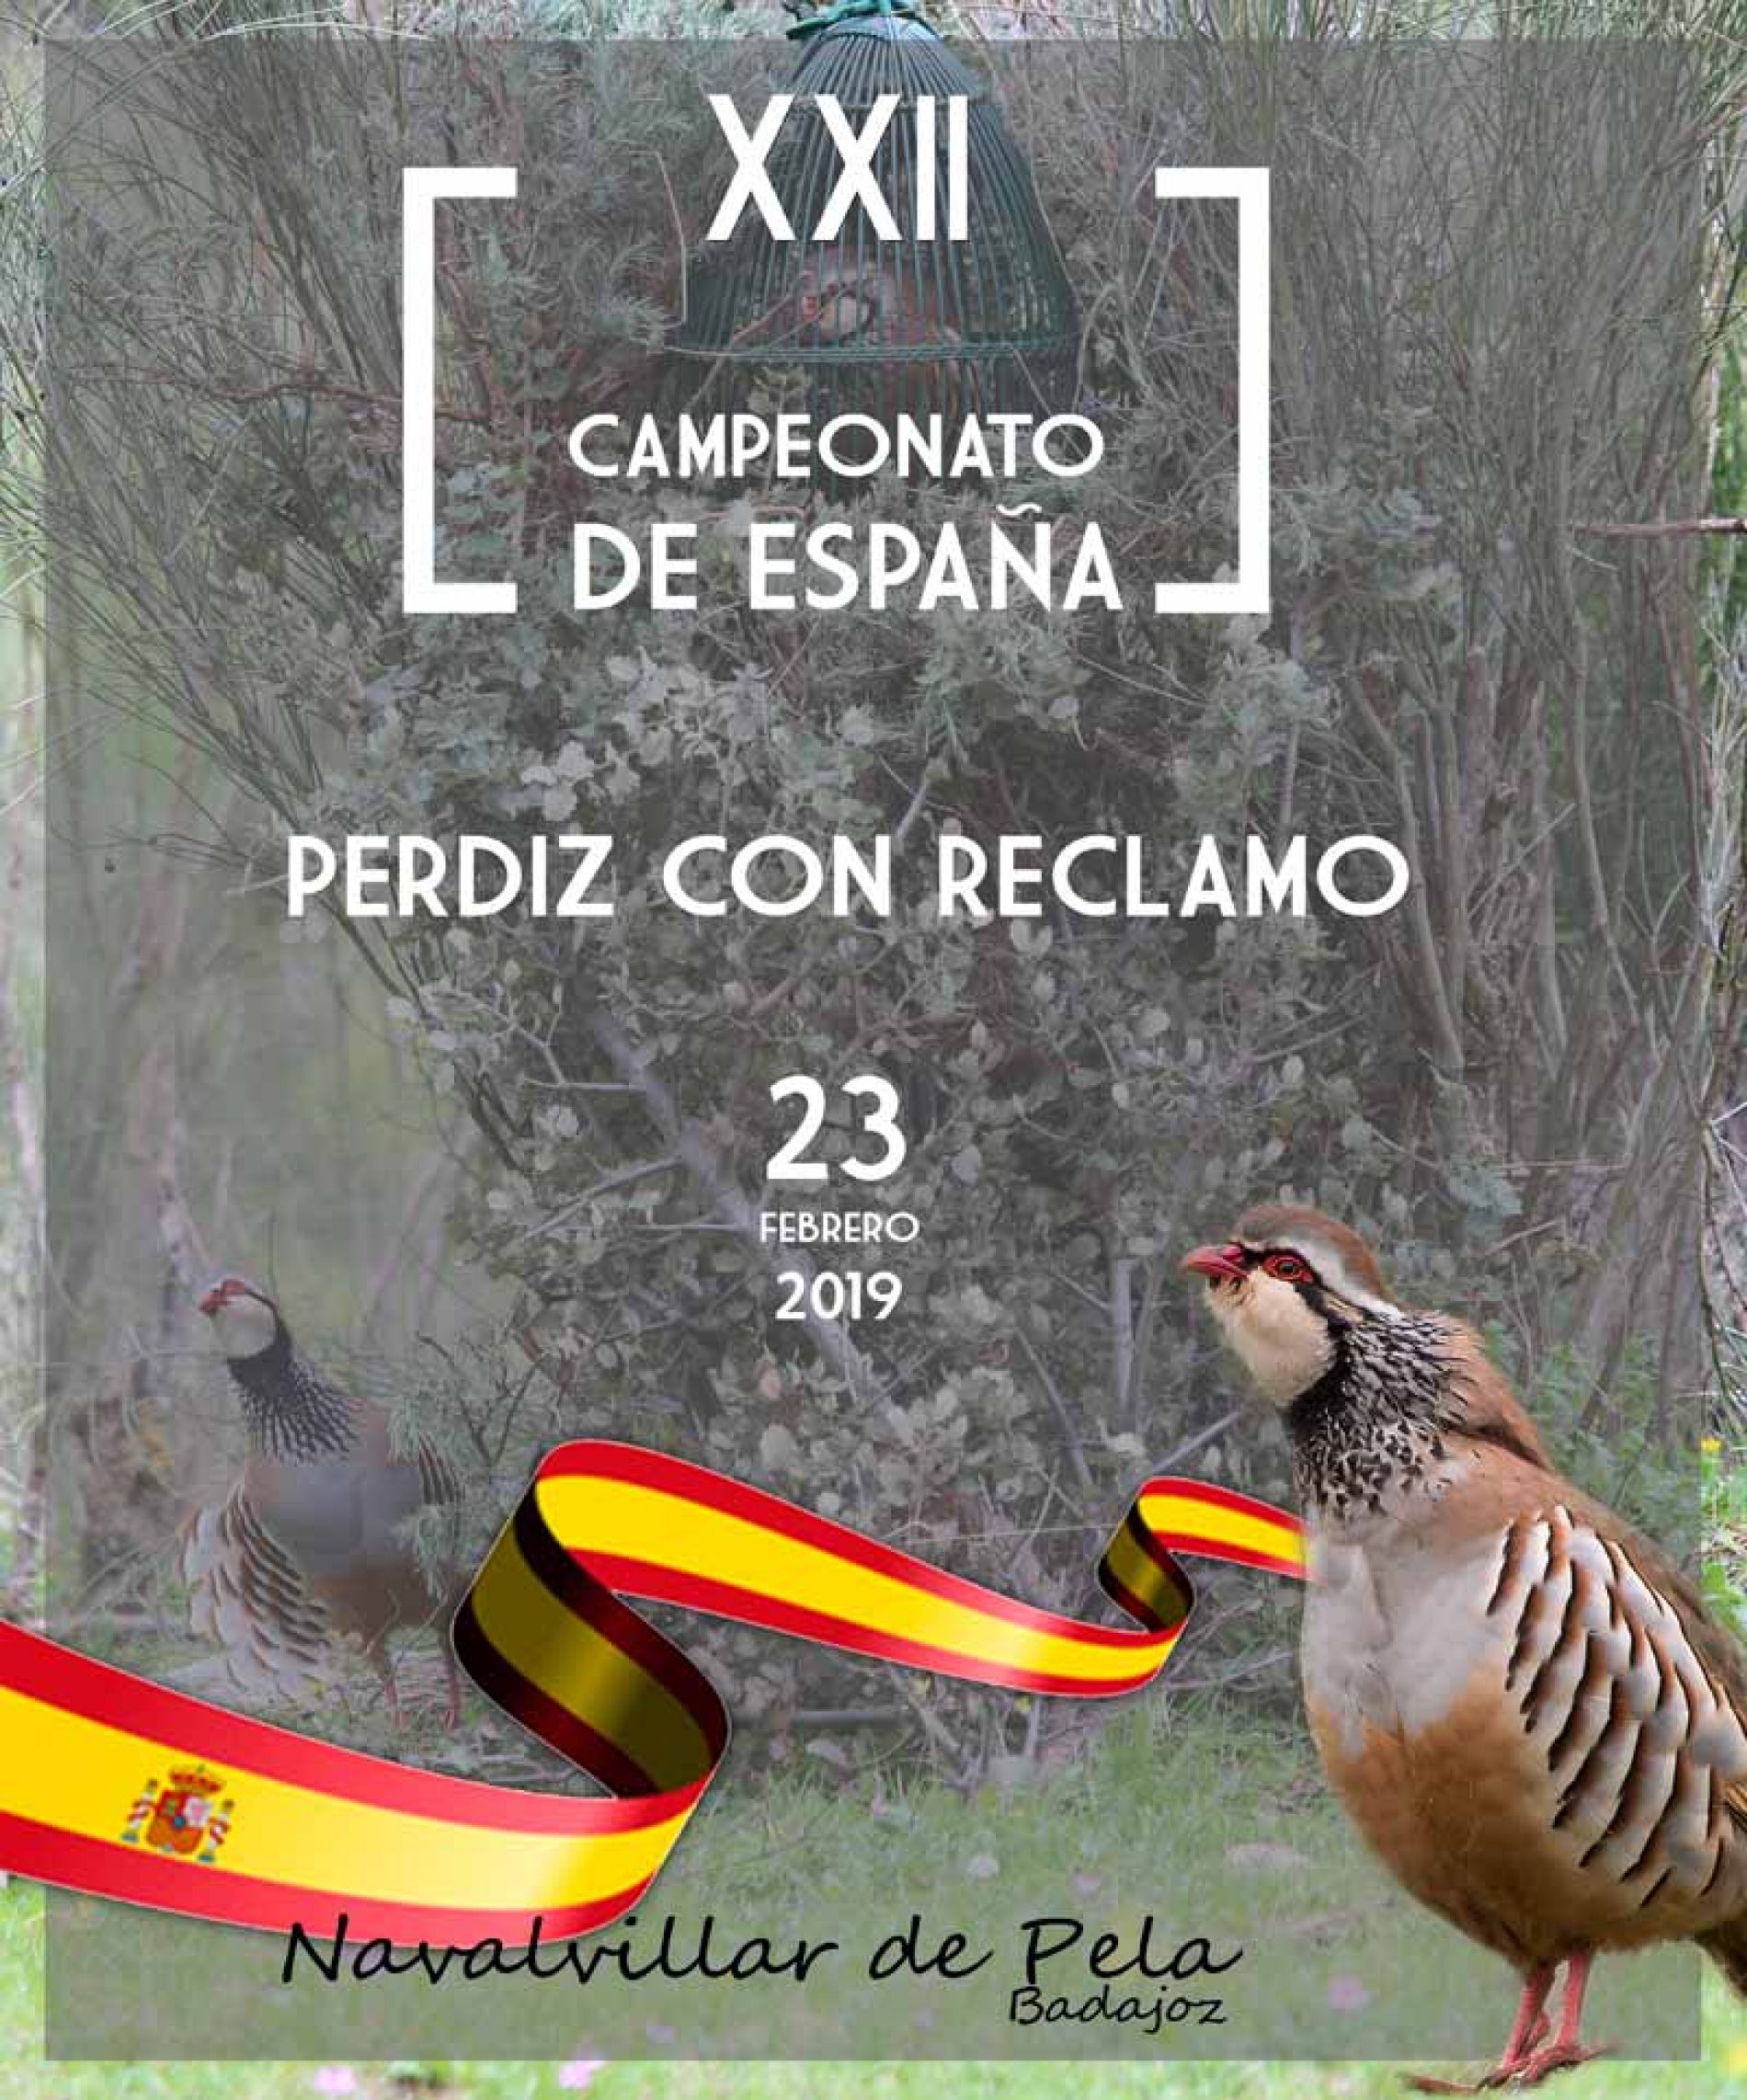 Campeonato de España de Perdiz con Reclamo 2019 en Navalvillar de Pela